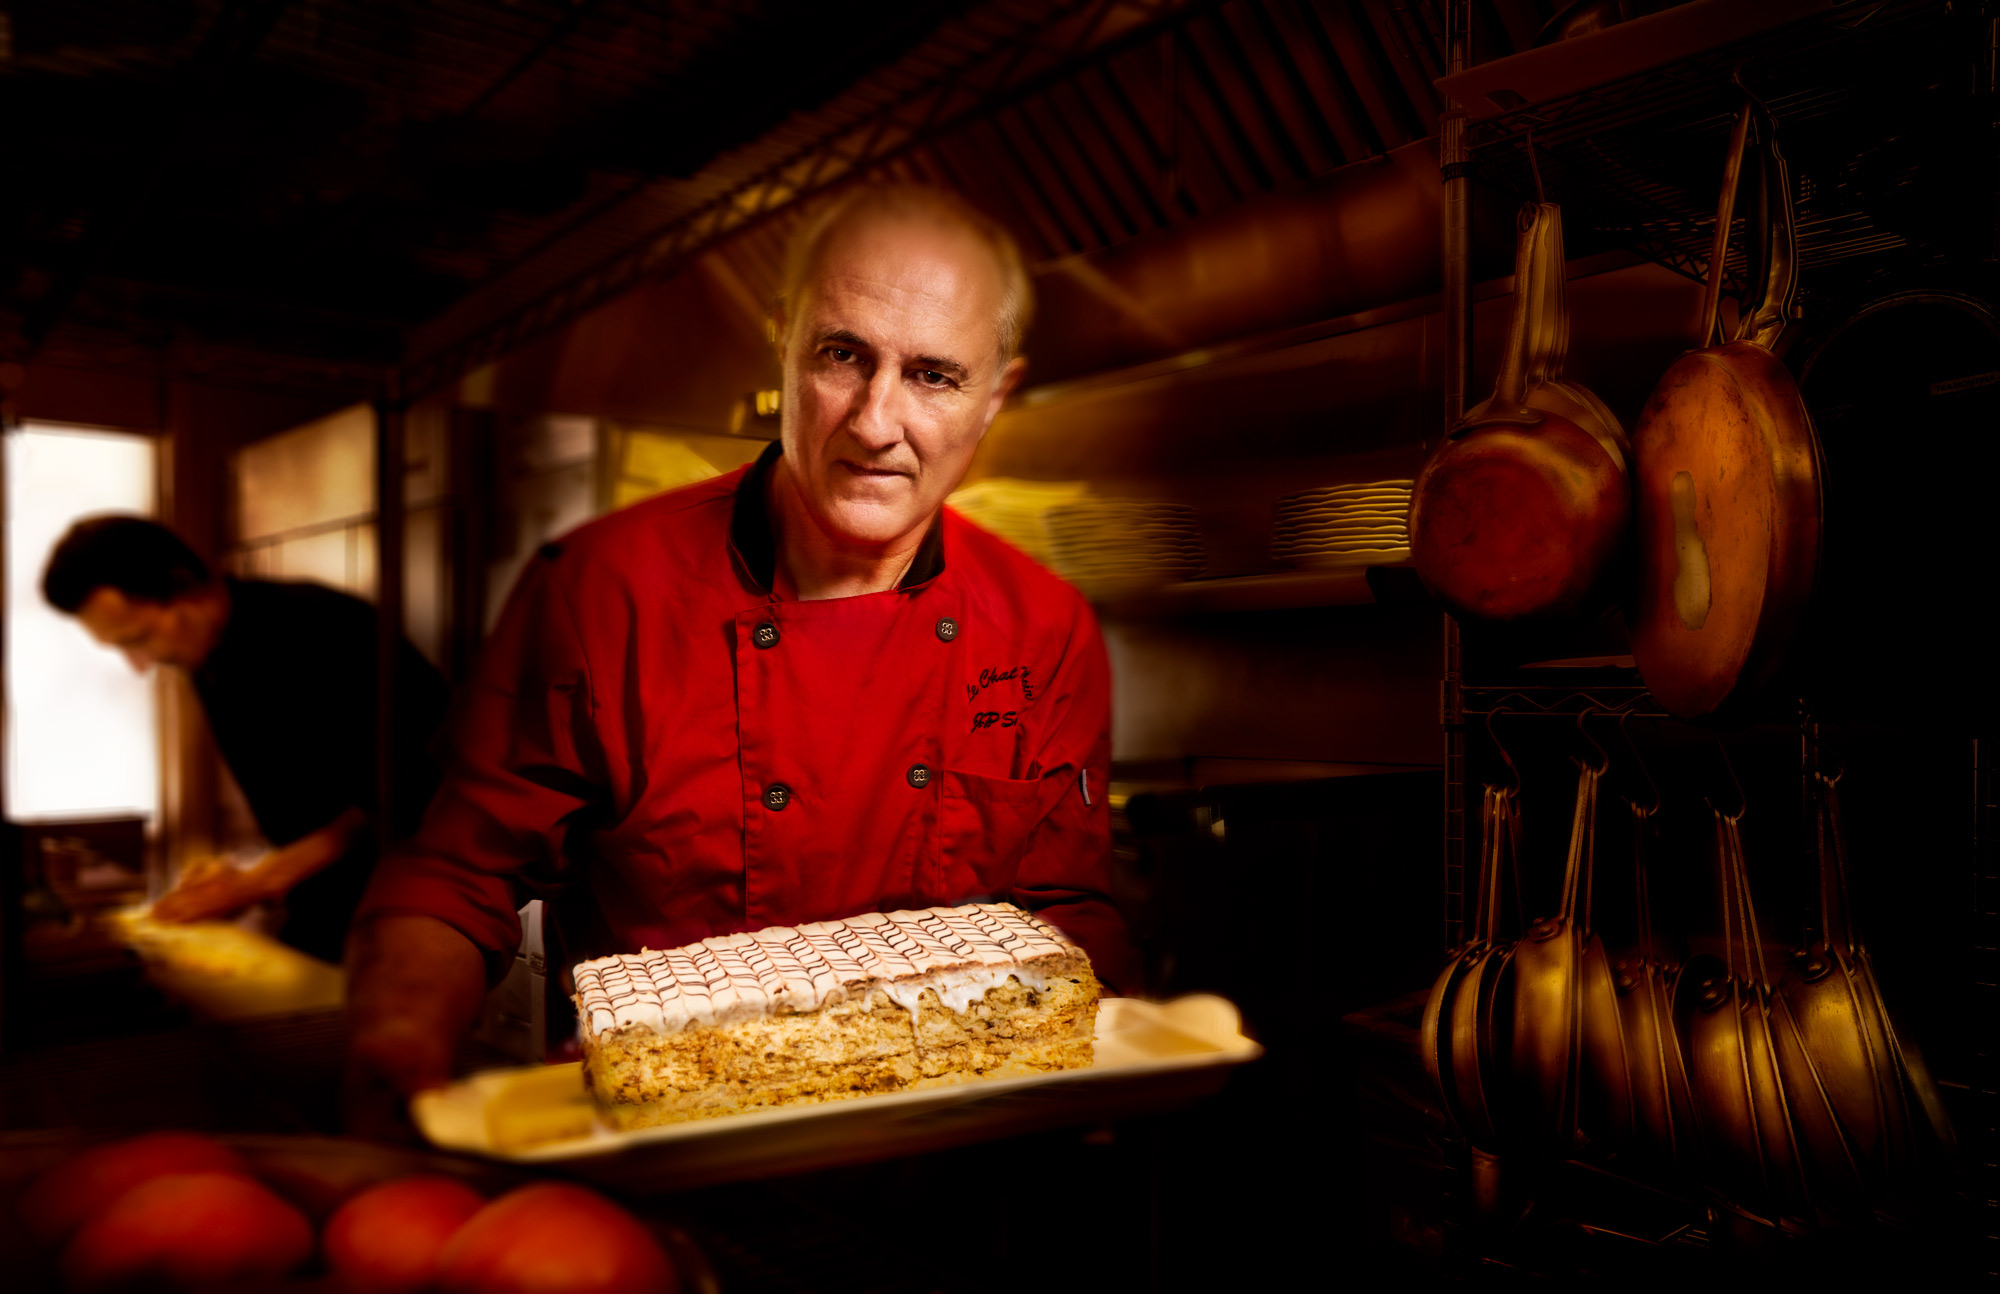 Chef Jean Pierre Serre of Le Chat Noir Restaurant, Riverside Photographed by Benoit Malphettes.